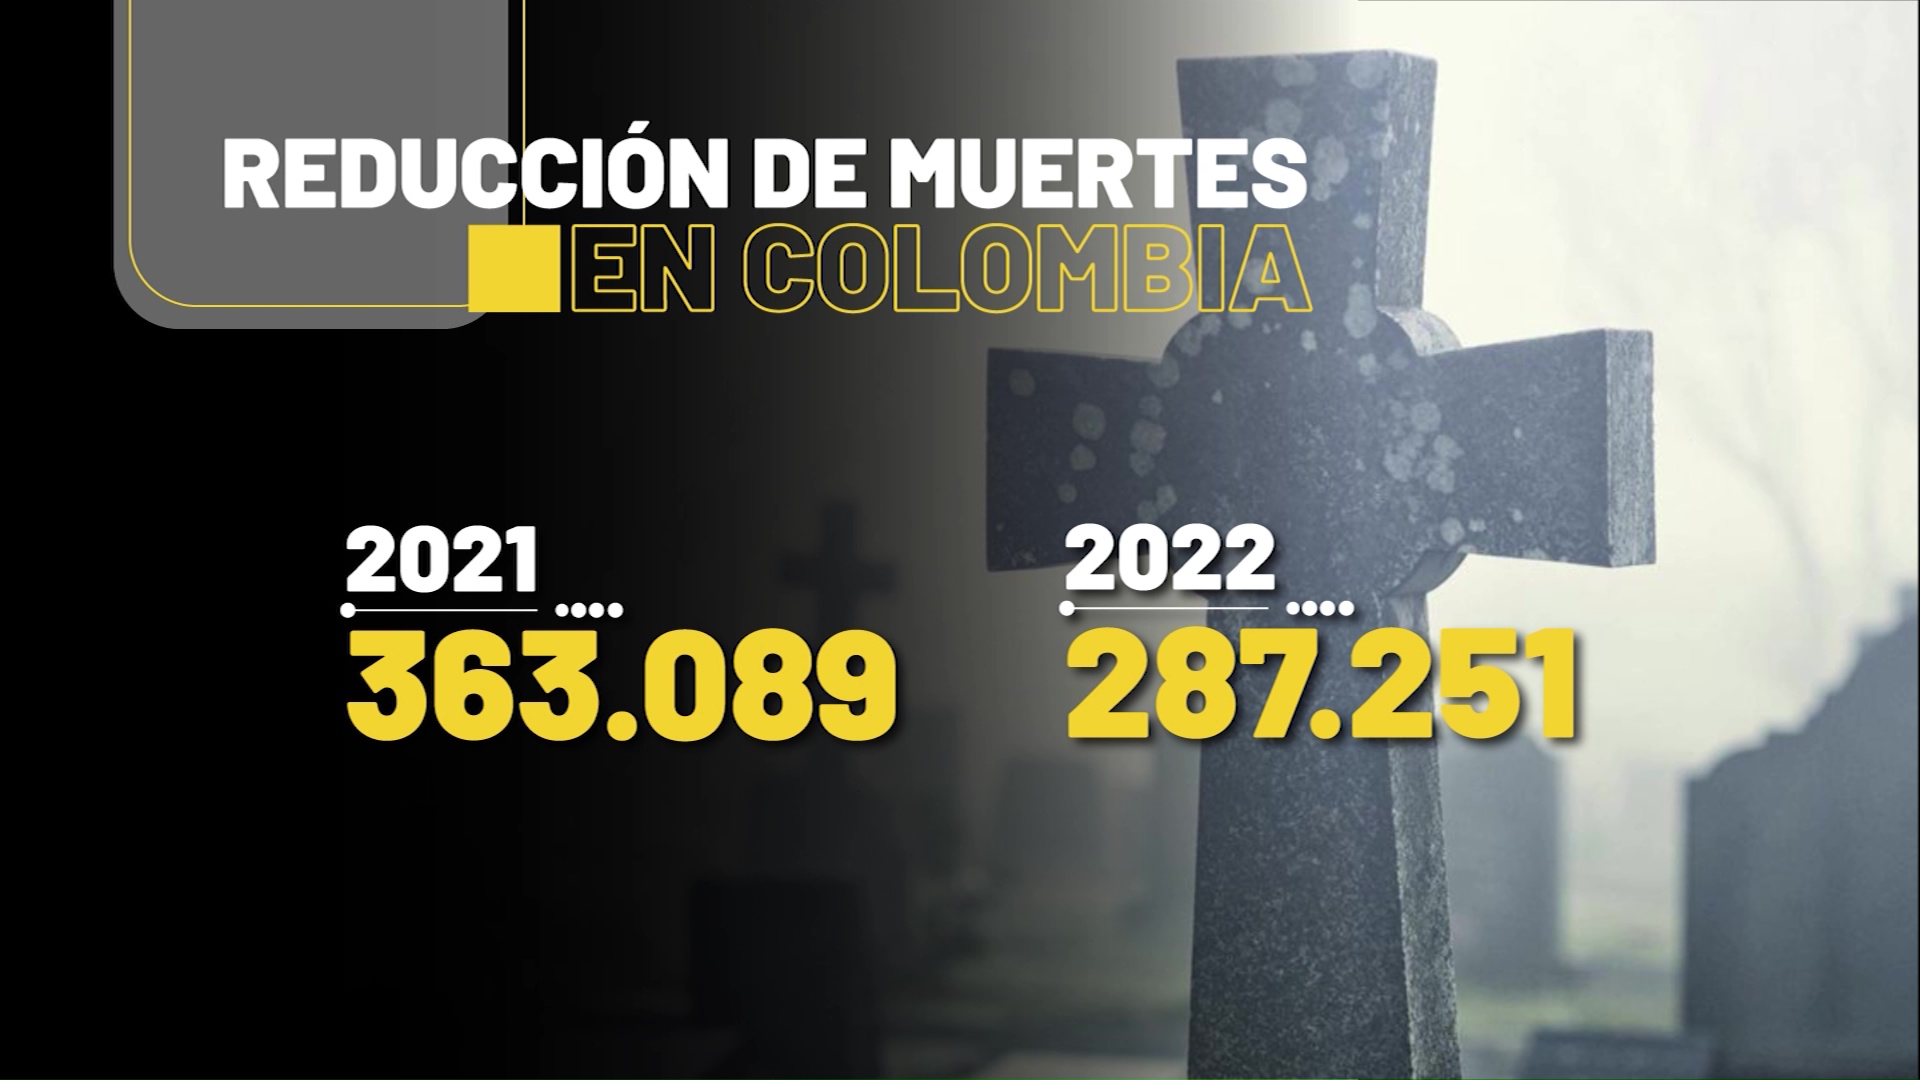 DANE disminuyen las muertes en Colombia